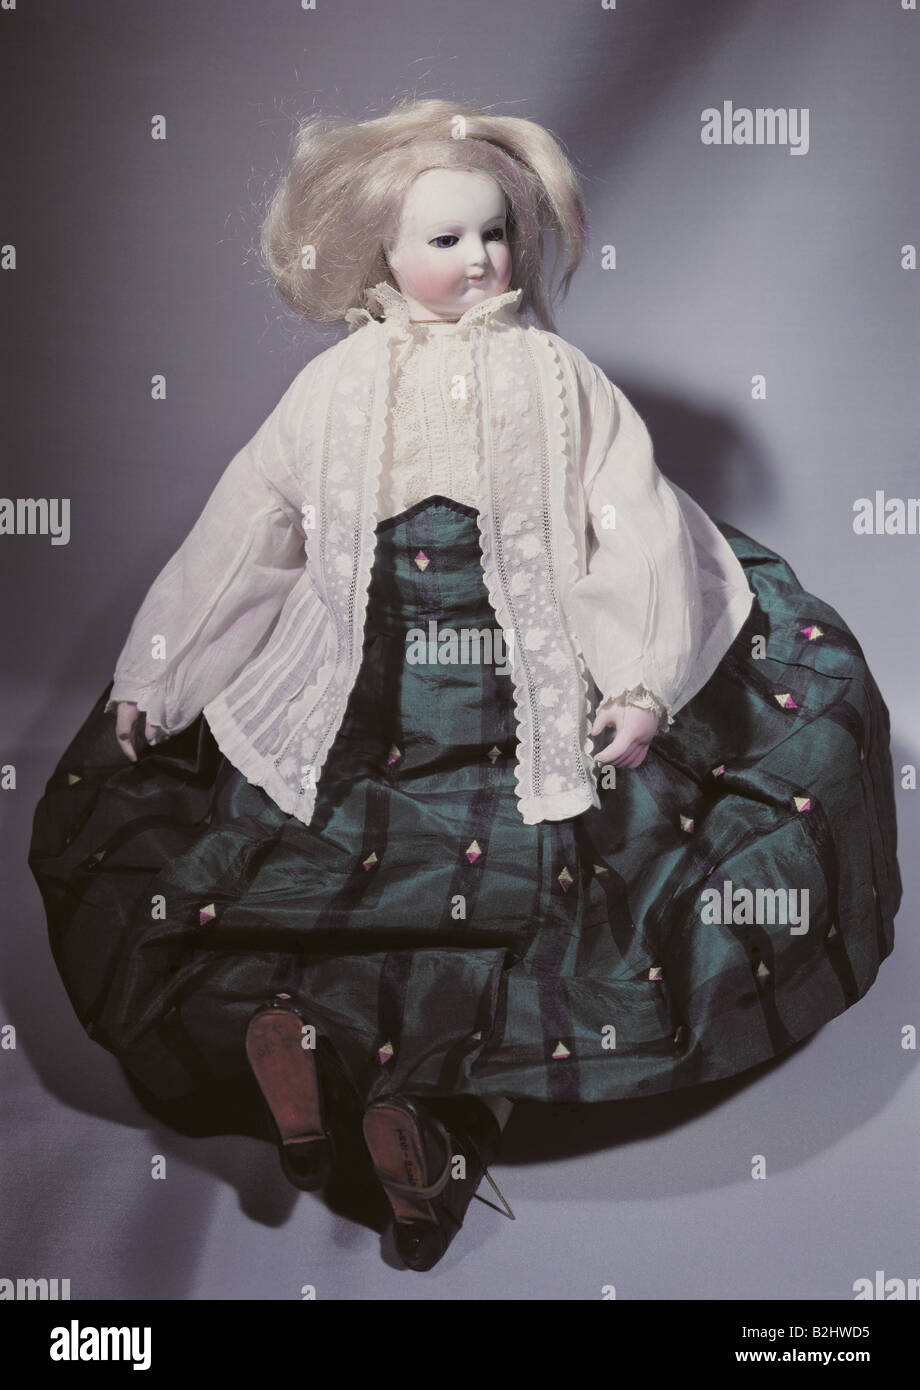 Spielzeug, Puppen, "Großes Manikin", Porzellan, Ziegenleder, Perücke, Höhe 41 cm, Paris, Frankreich, ca. 1870, Bethnal Green Museum, London, Stockfoto